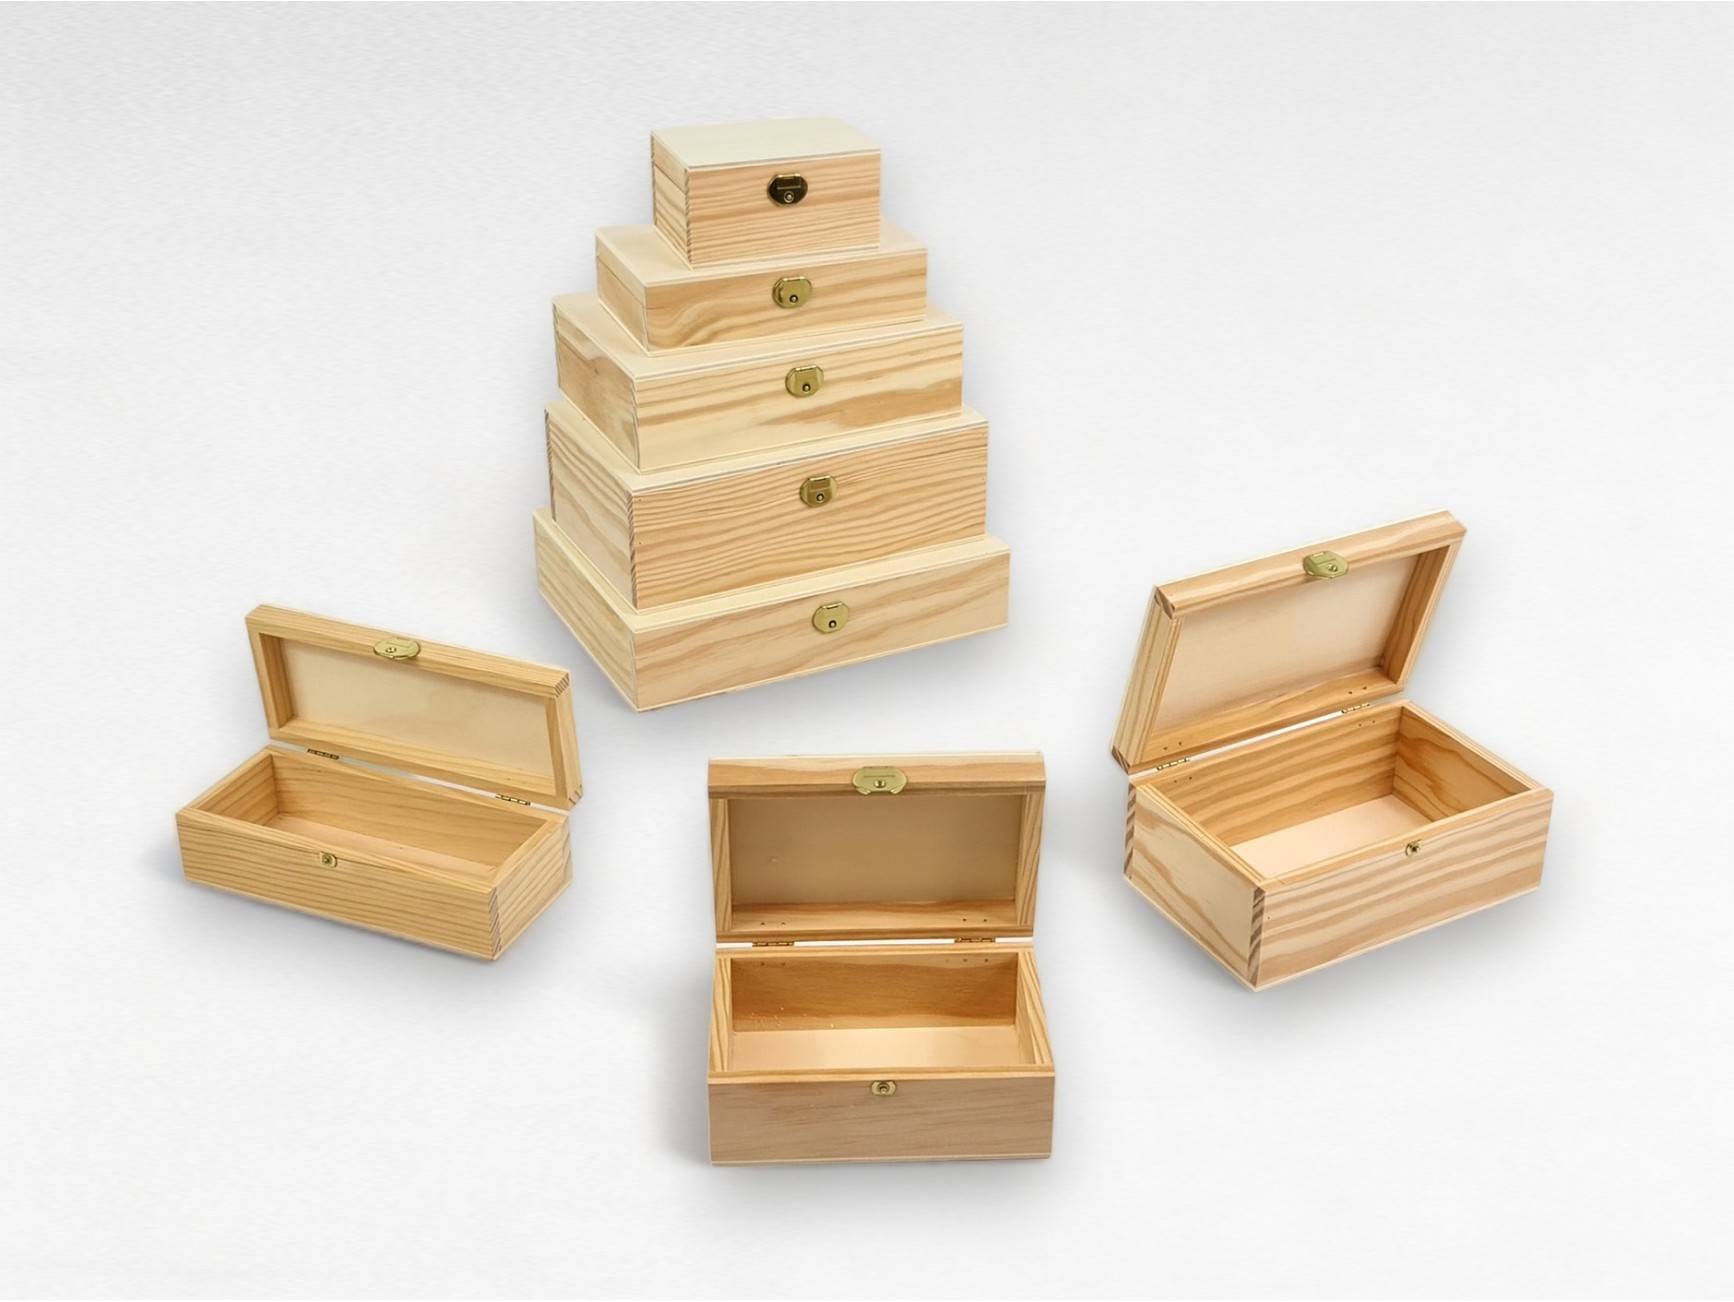 Manualidades con madera y cajas de madera para manualidades - Mabaonline